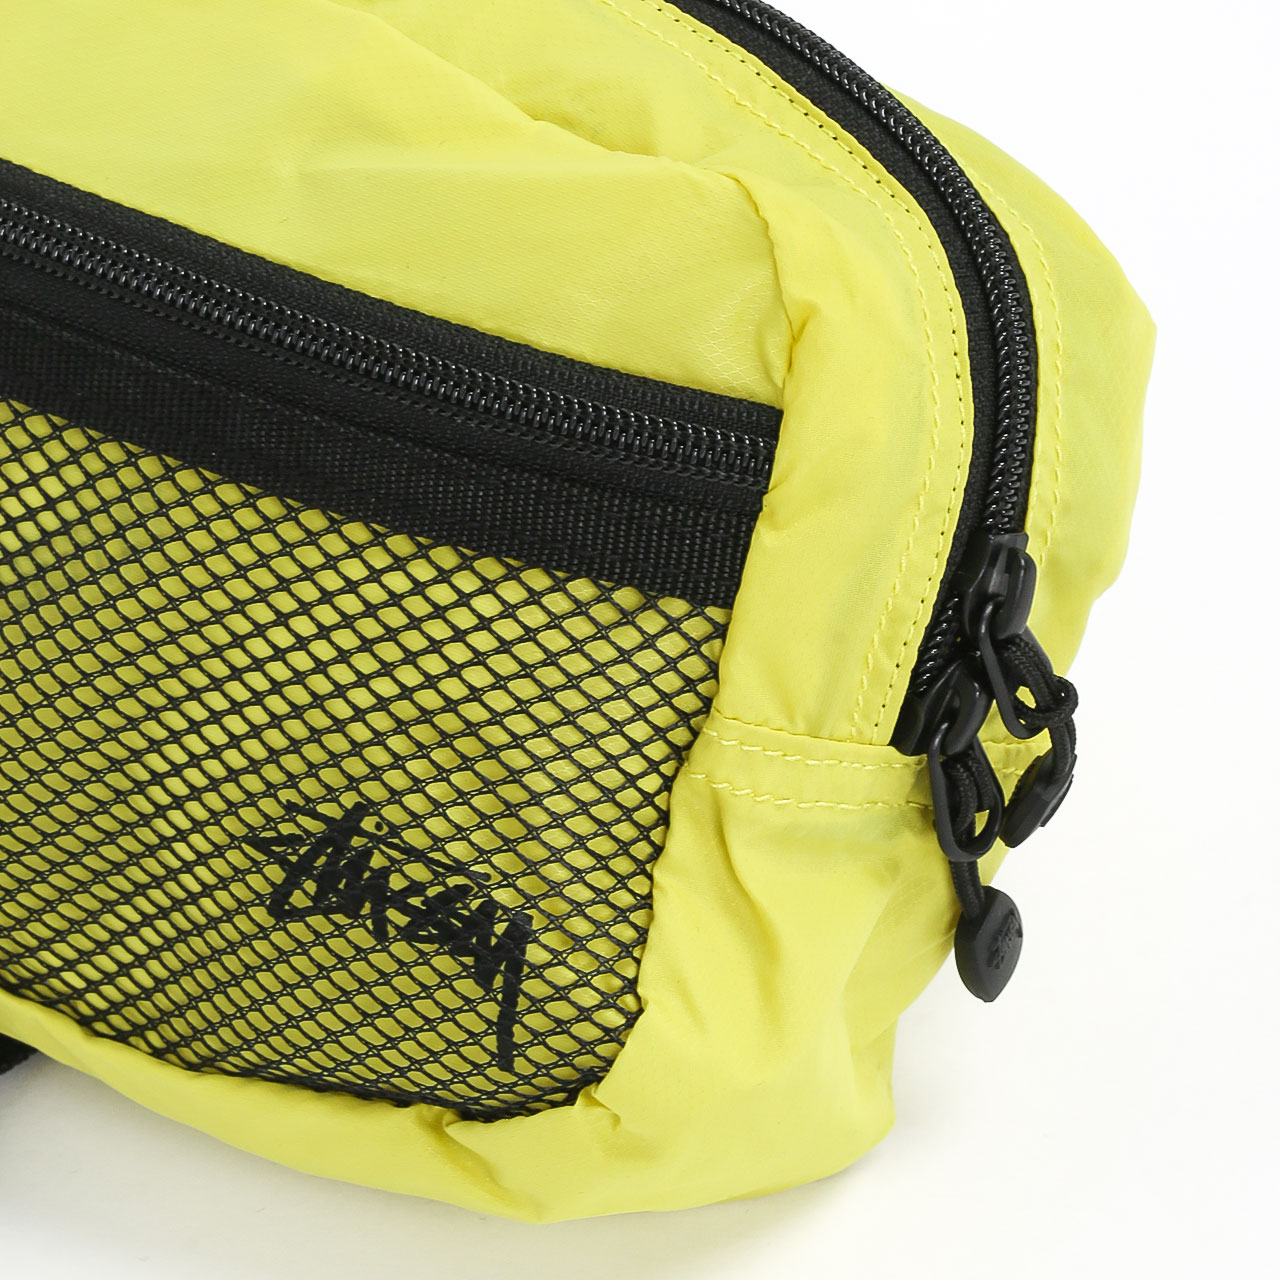  желтая сумка Stussy Light Weight Waist Bag 134210-citrus - цена, описание, фото 2